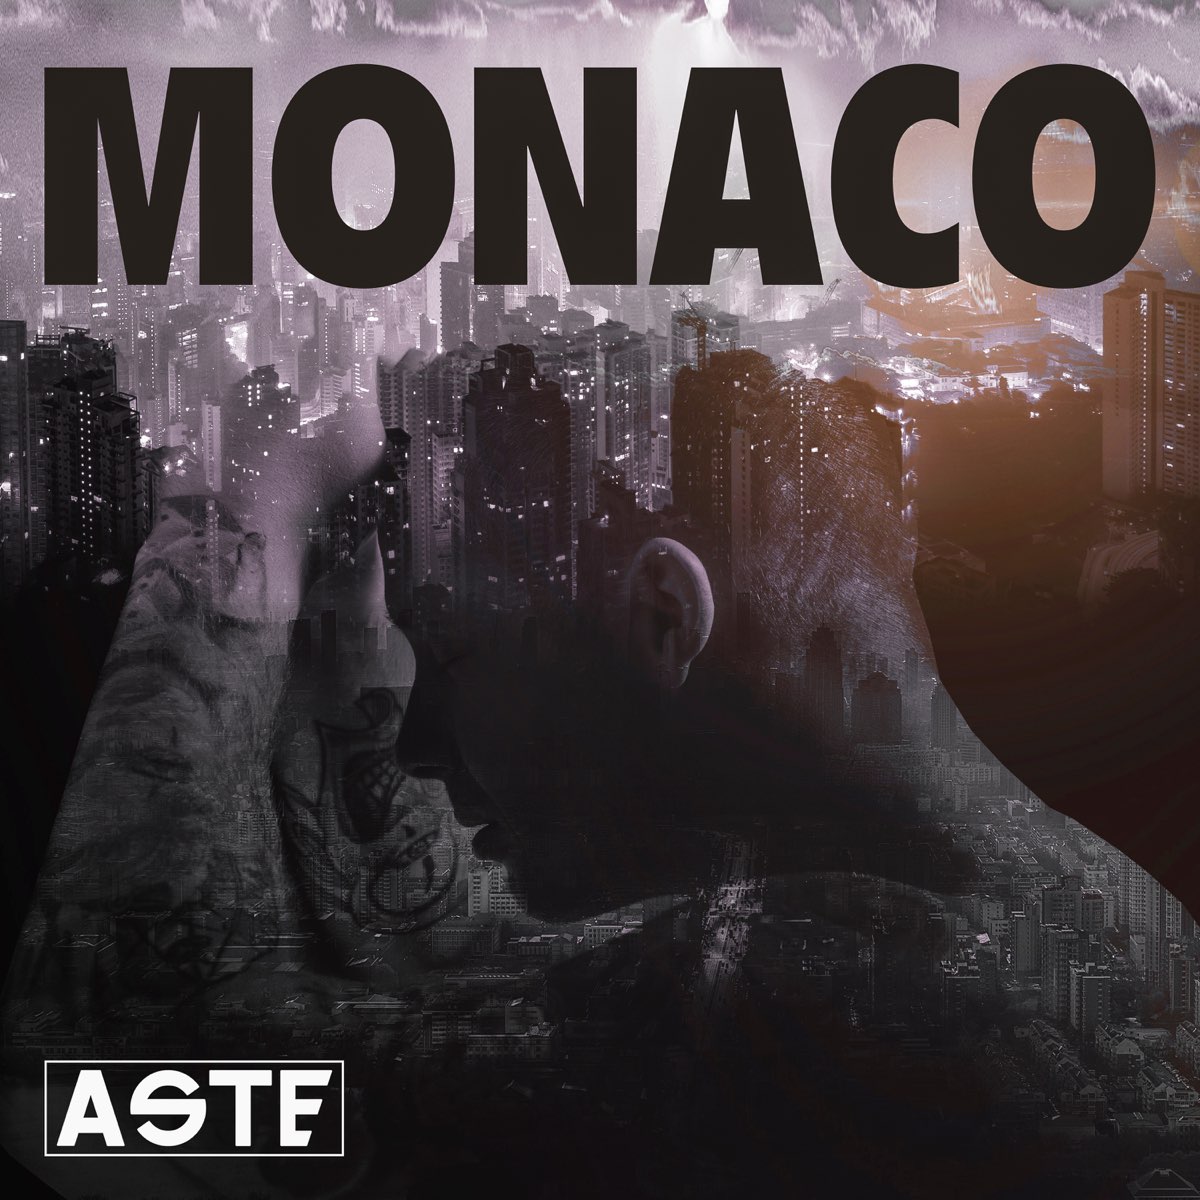 Монако песня. Монако песня обложка. Солнце Монако альбом. Прослушать Монако. Зачем монако песня слушать